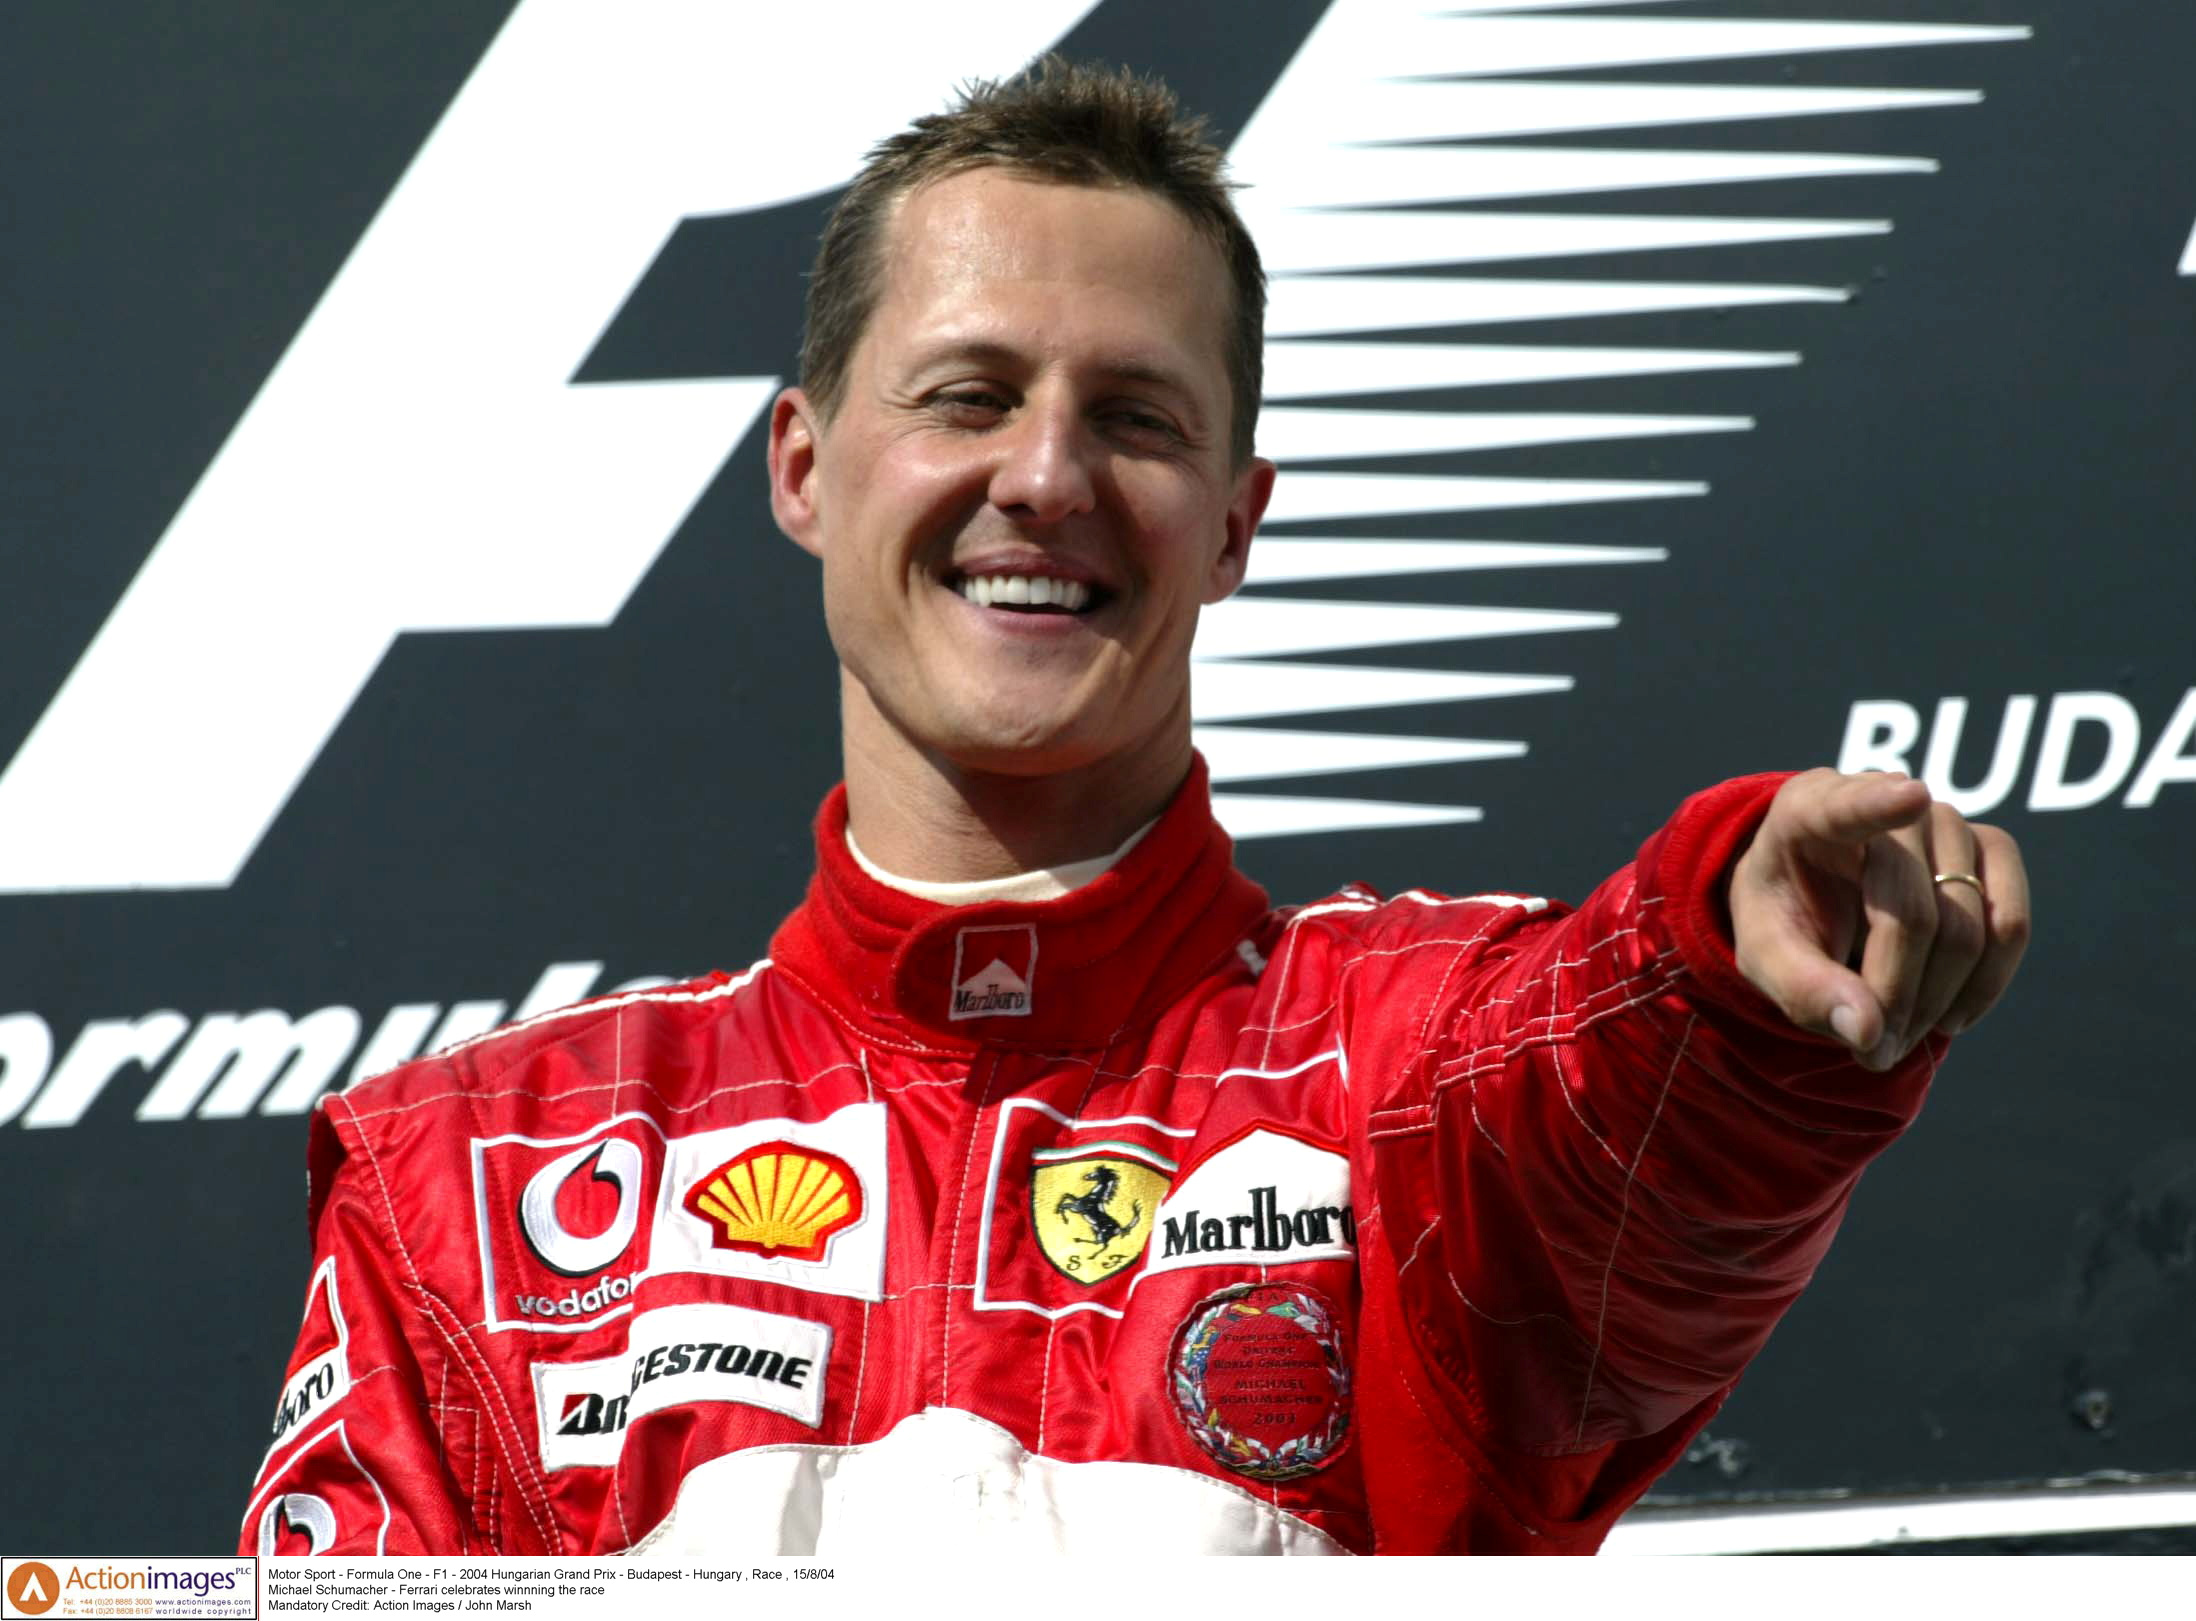 Lo que no contó el documental: qué se sabe de la salud de Michael Schumacher  tras su accidente - Infobae